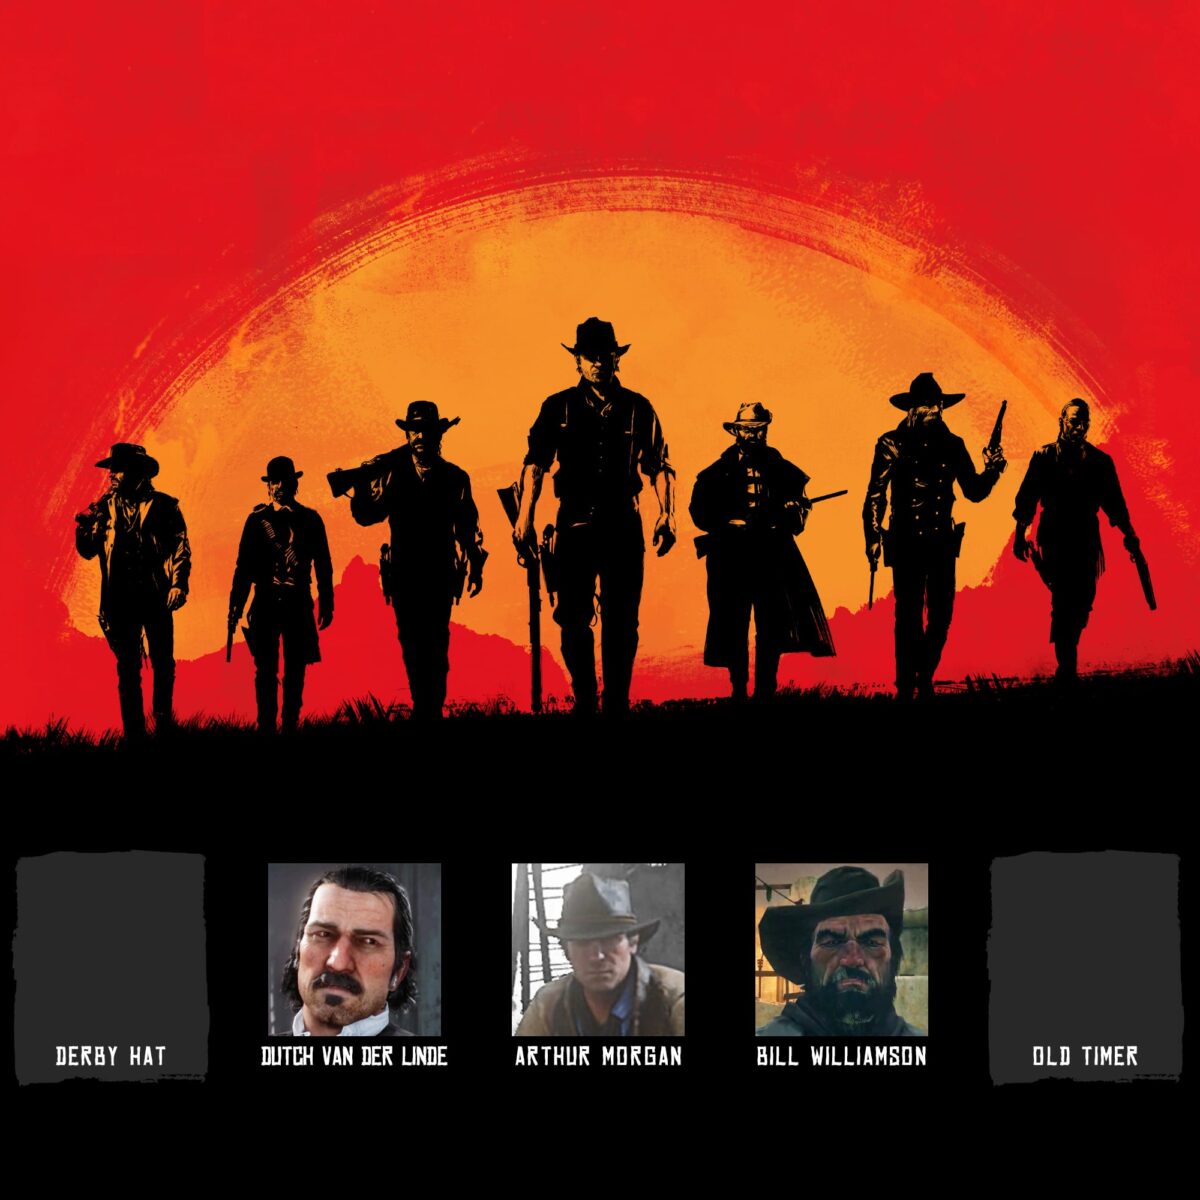 Red Dead Redemption 2: consigue dinero infinito de forma rápida